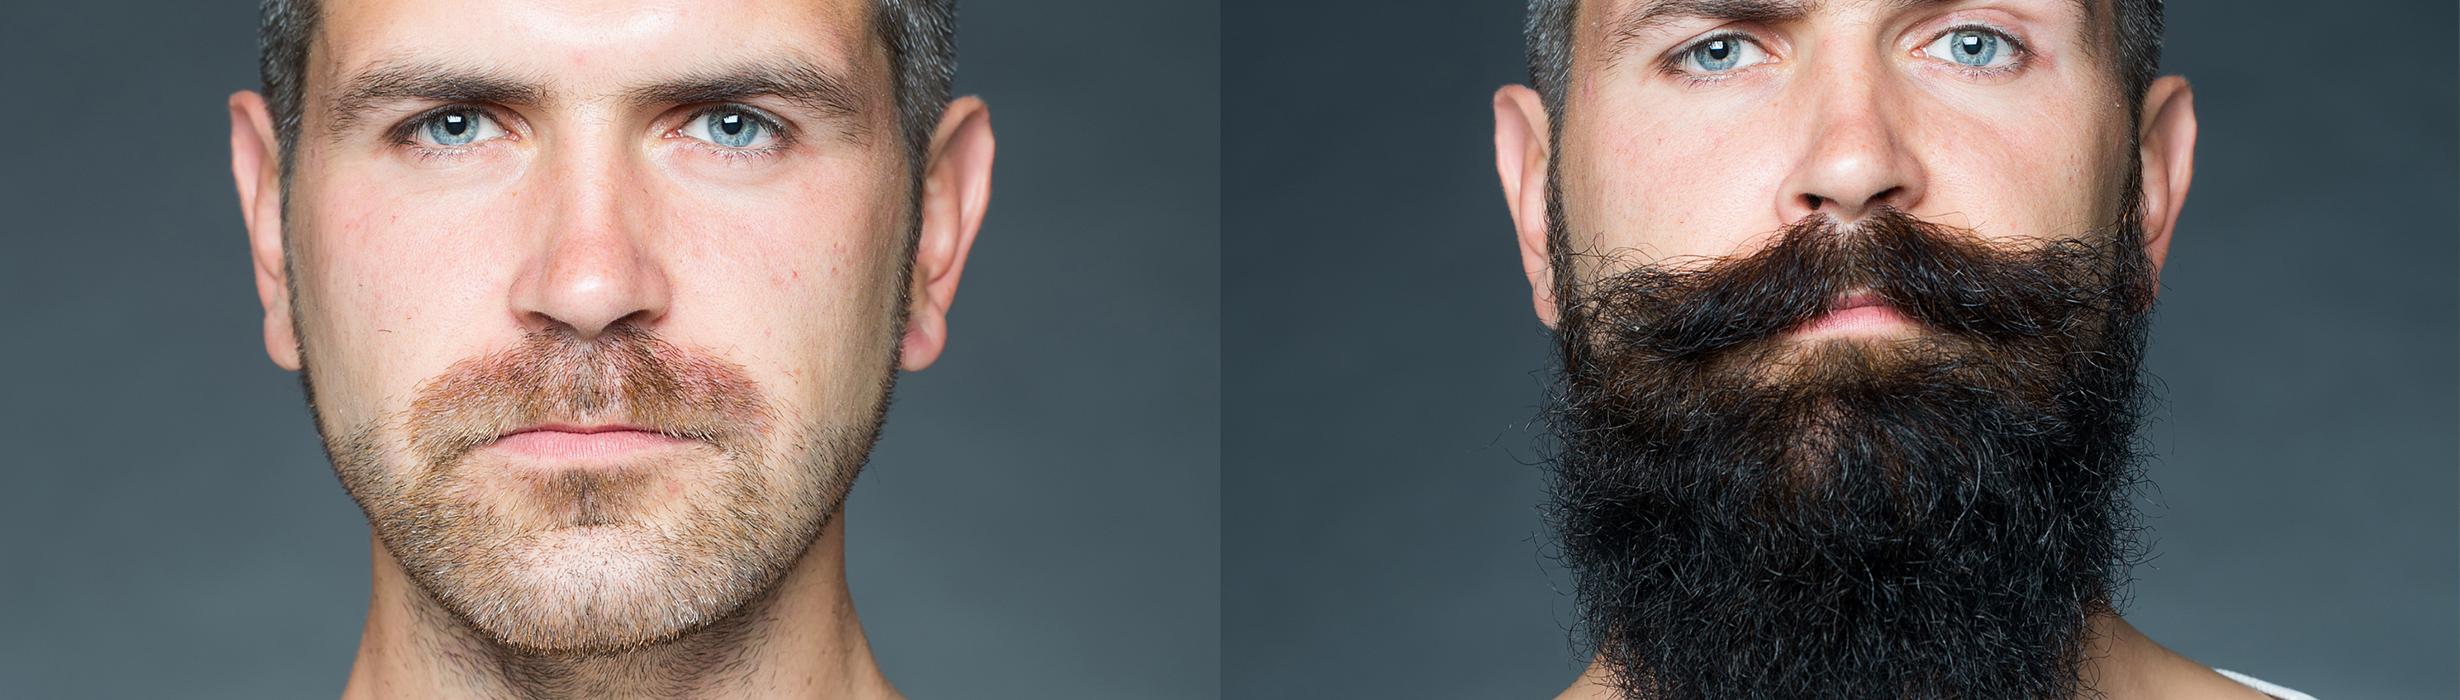 Belladonna-Beard transplantation